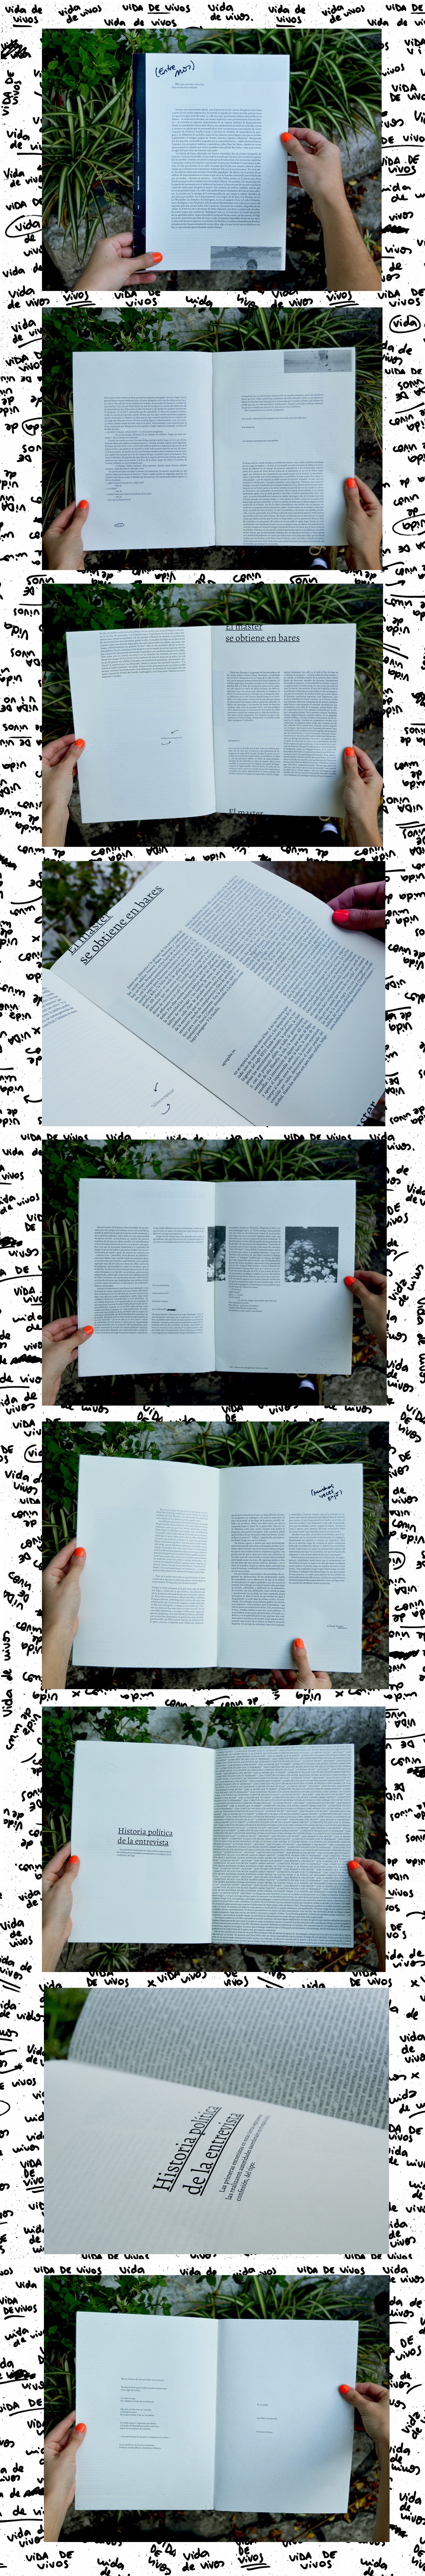 diseño editorial vida de vivos fasciculos manela catedra manela fadu uba edición entrevistas